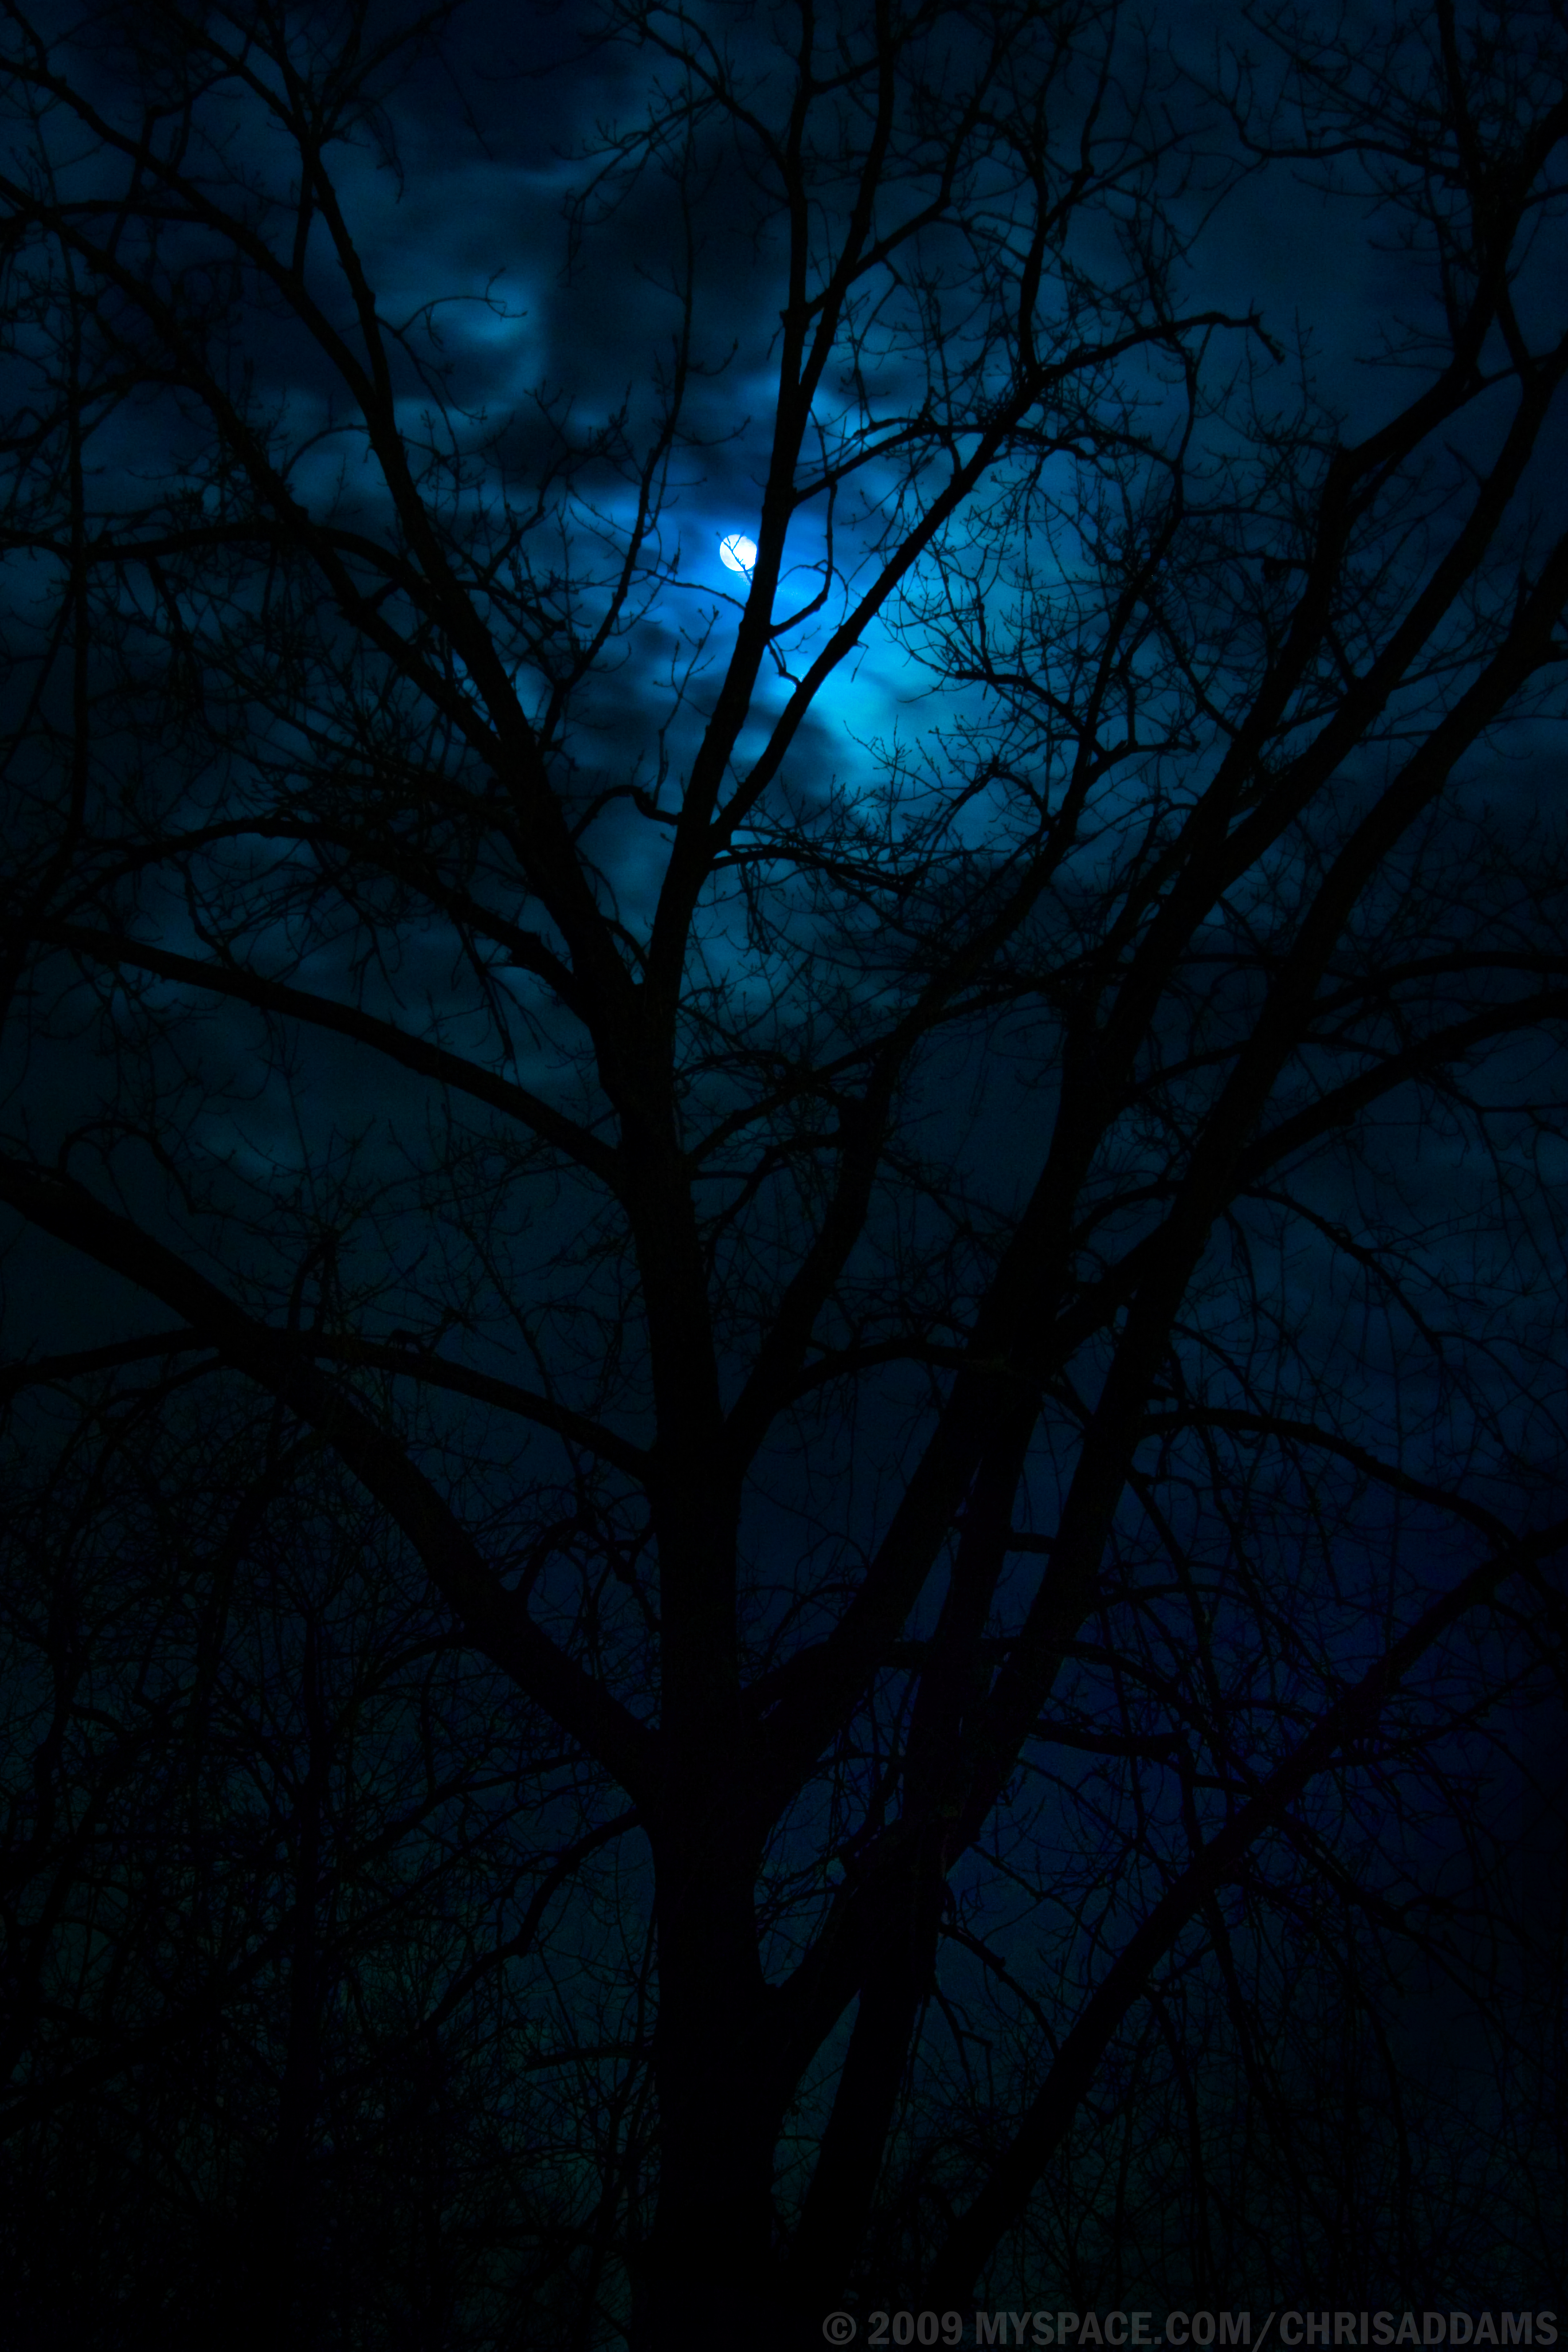 http://fc01.deviantart.net/fs41/f/2009/042/0/4/Dark_Moon_by_ChrisAddams.jpg